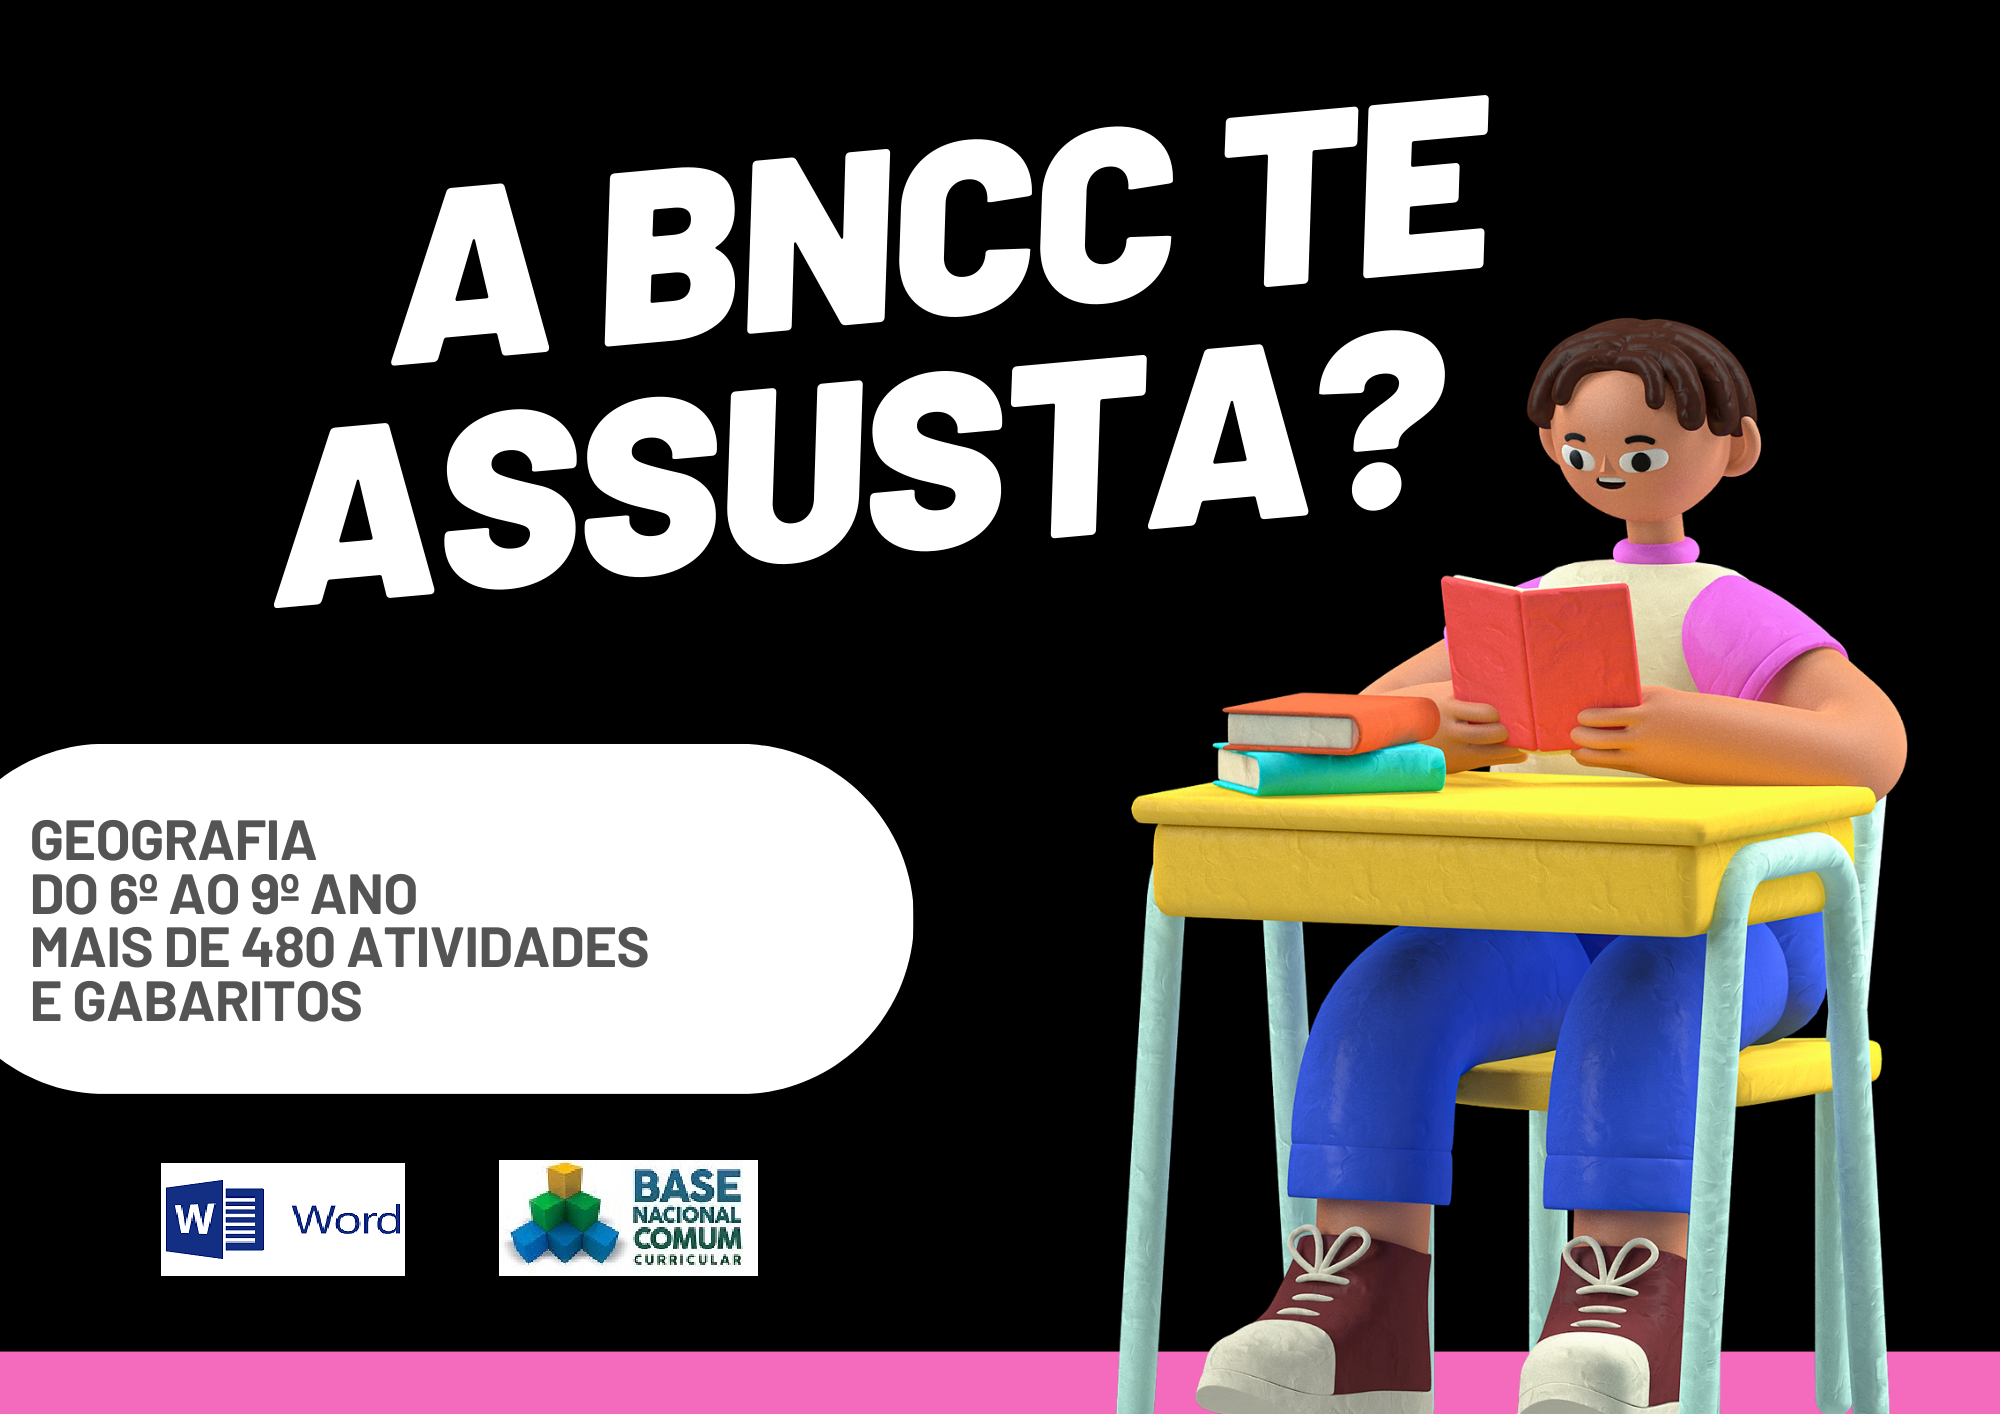 A BNCC te assusta geografia do 6º ao 9º ano mais de 480 atividades e gabaritos com um aluno segurando um livro e os símbolos do Word e da BNCC